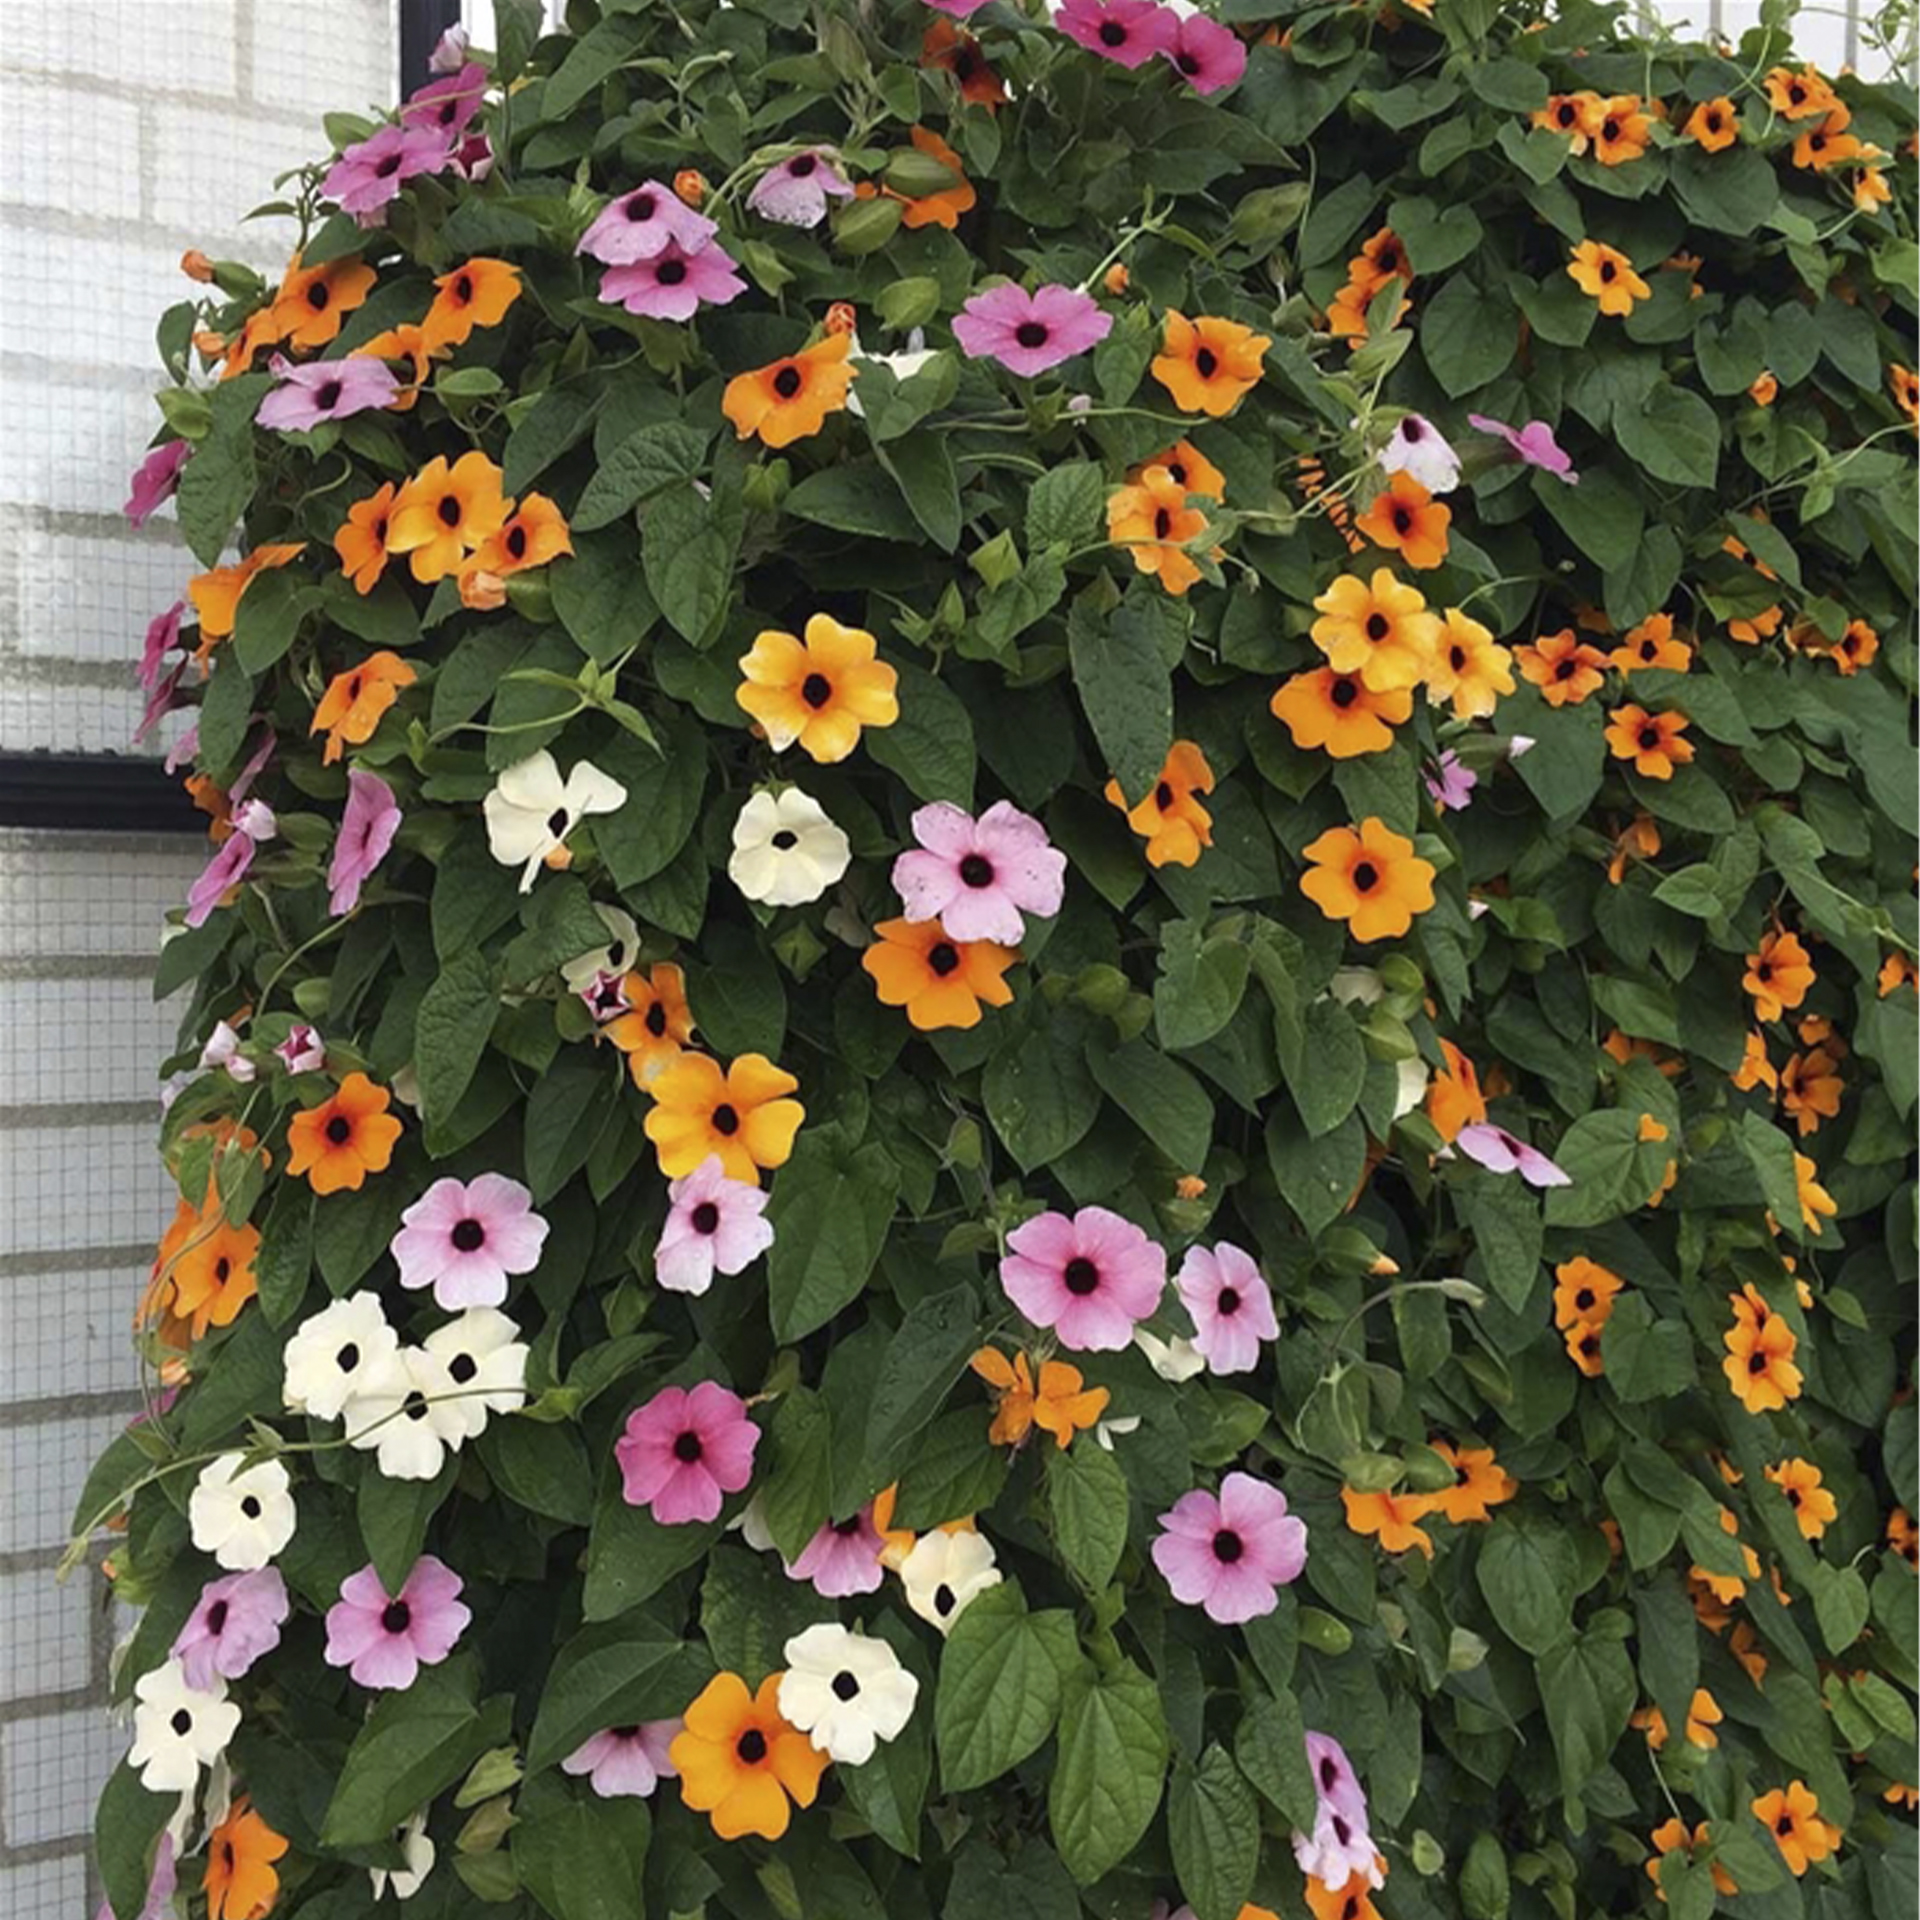 buschig rankende Blume mit verschiedenfarbenen Blüten